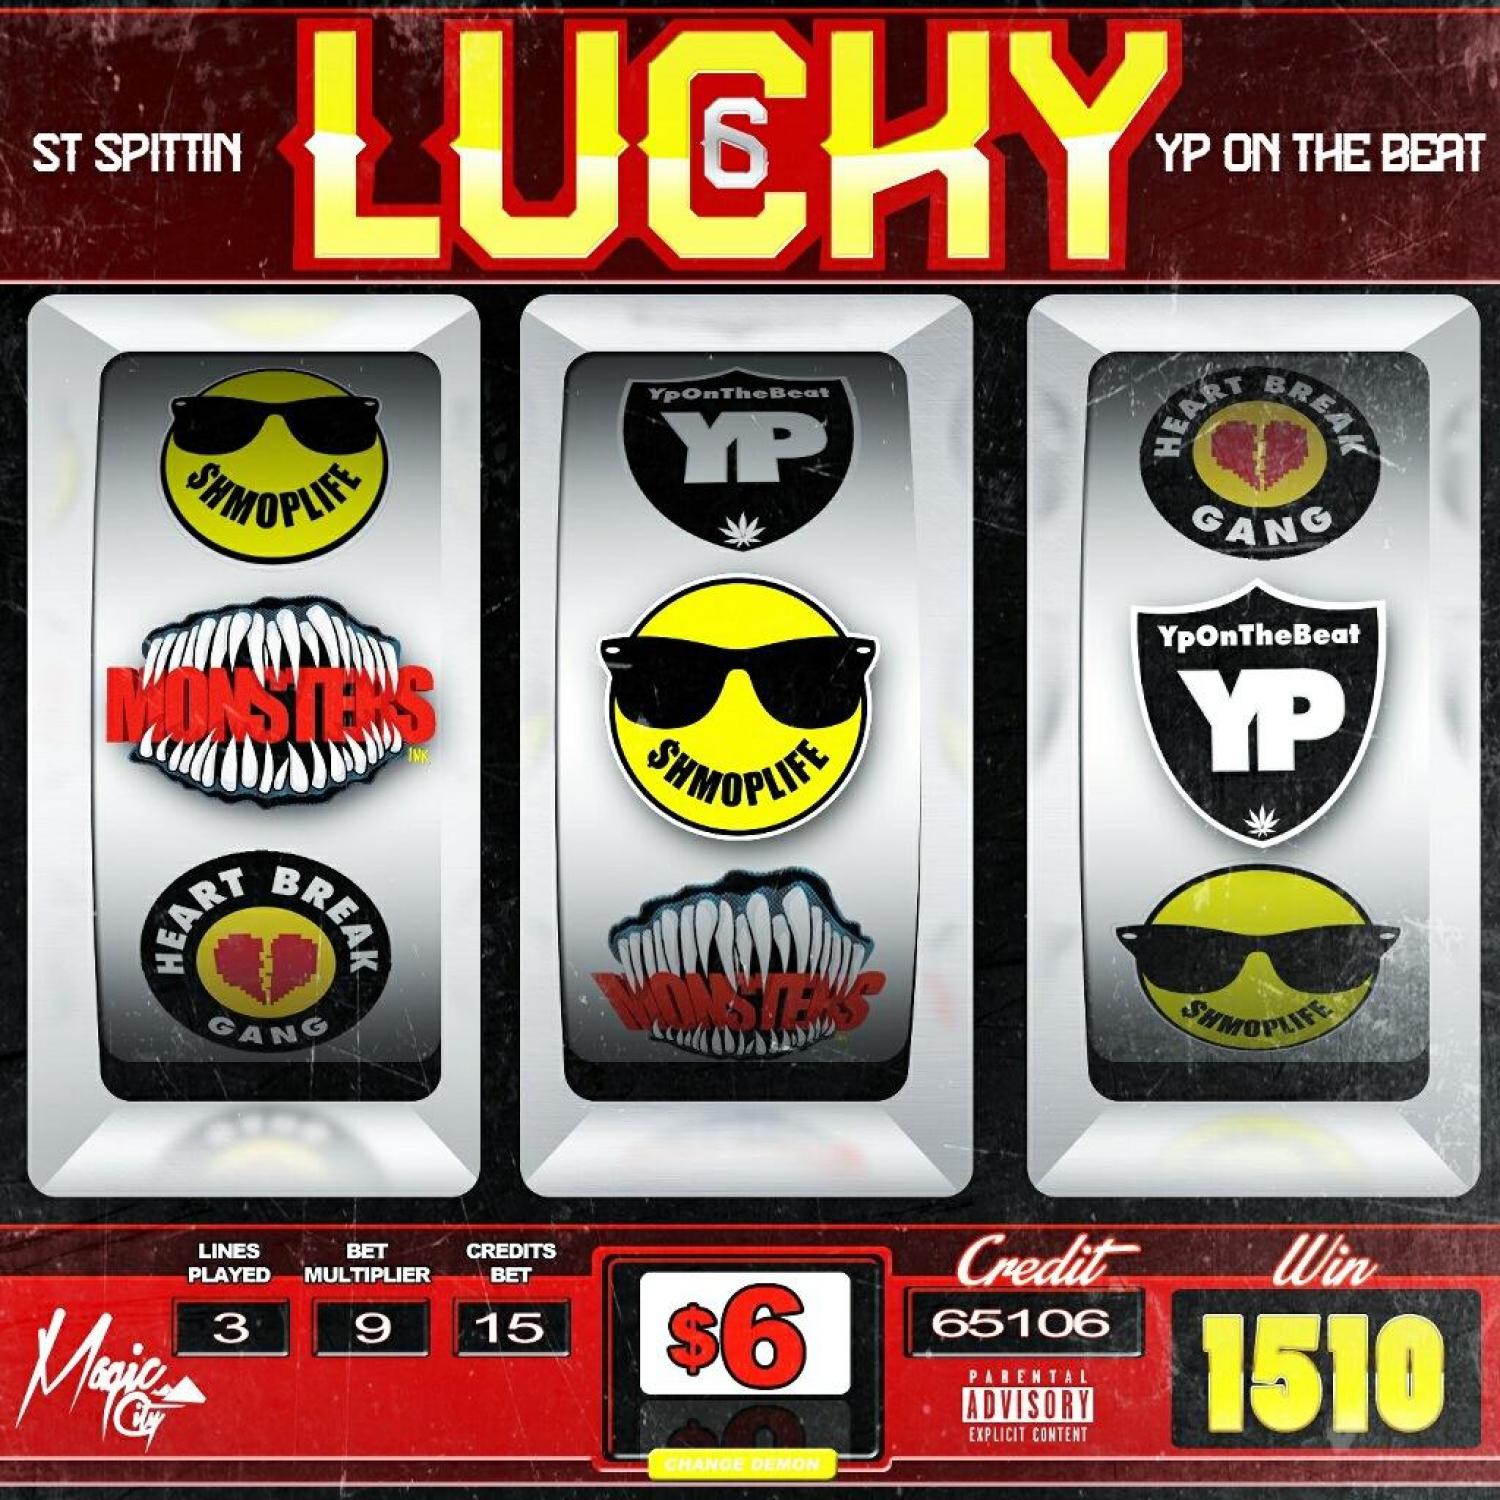 Lucky 6 - EP